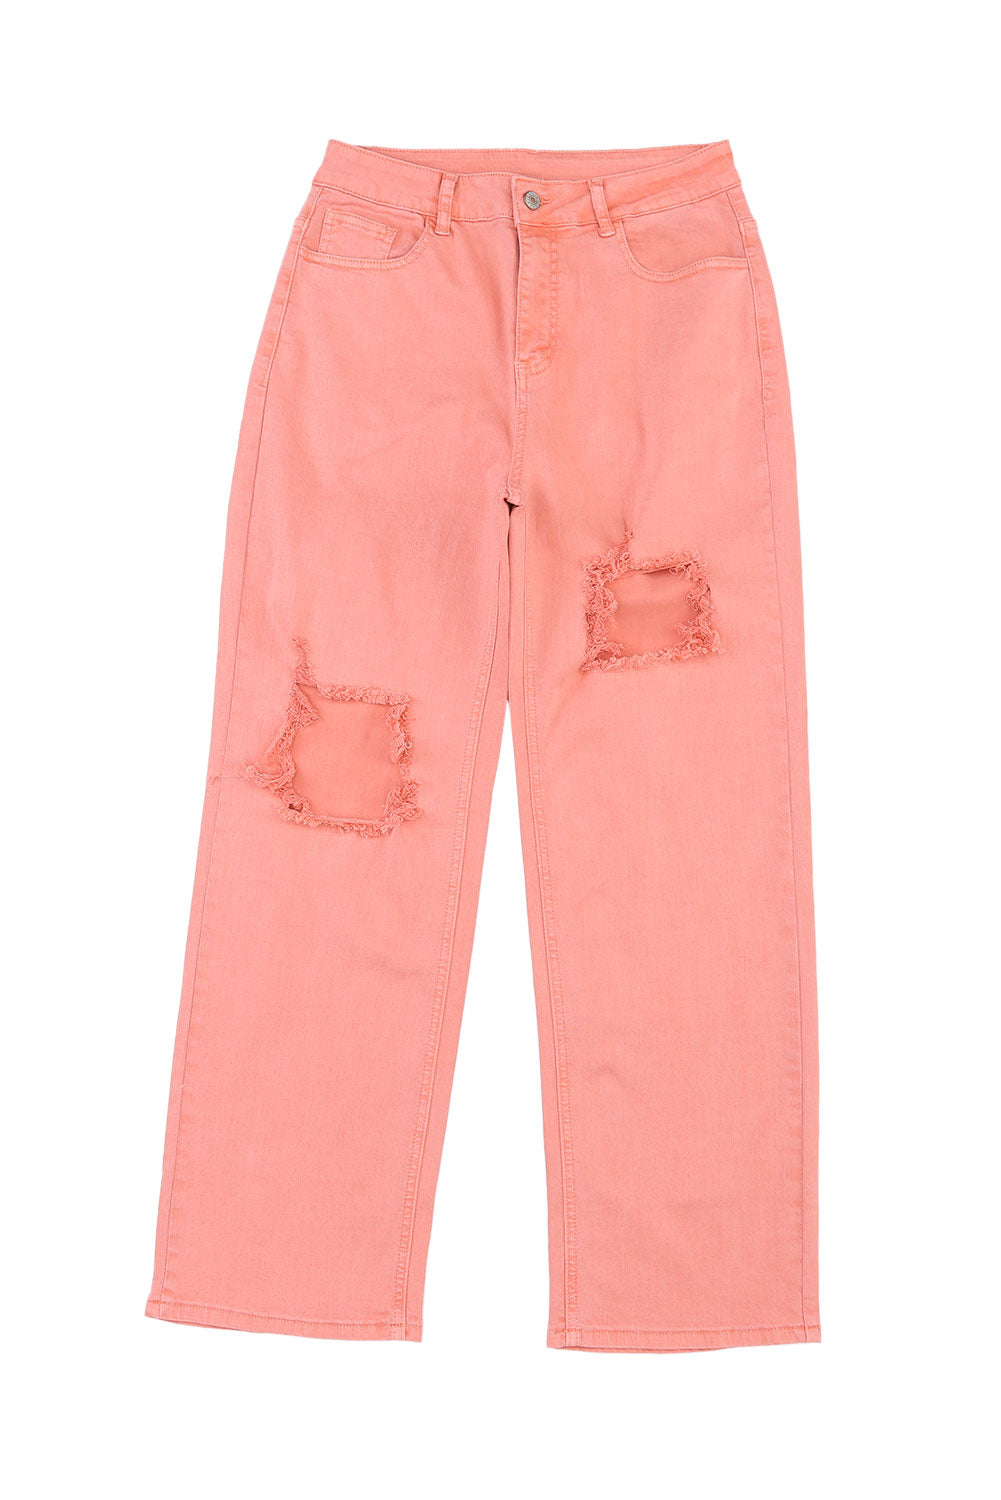 Jeans rosa con tasca a gamba dritta strappata a vita alta